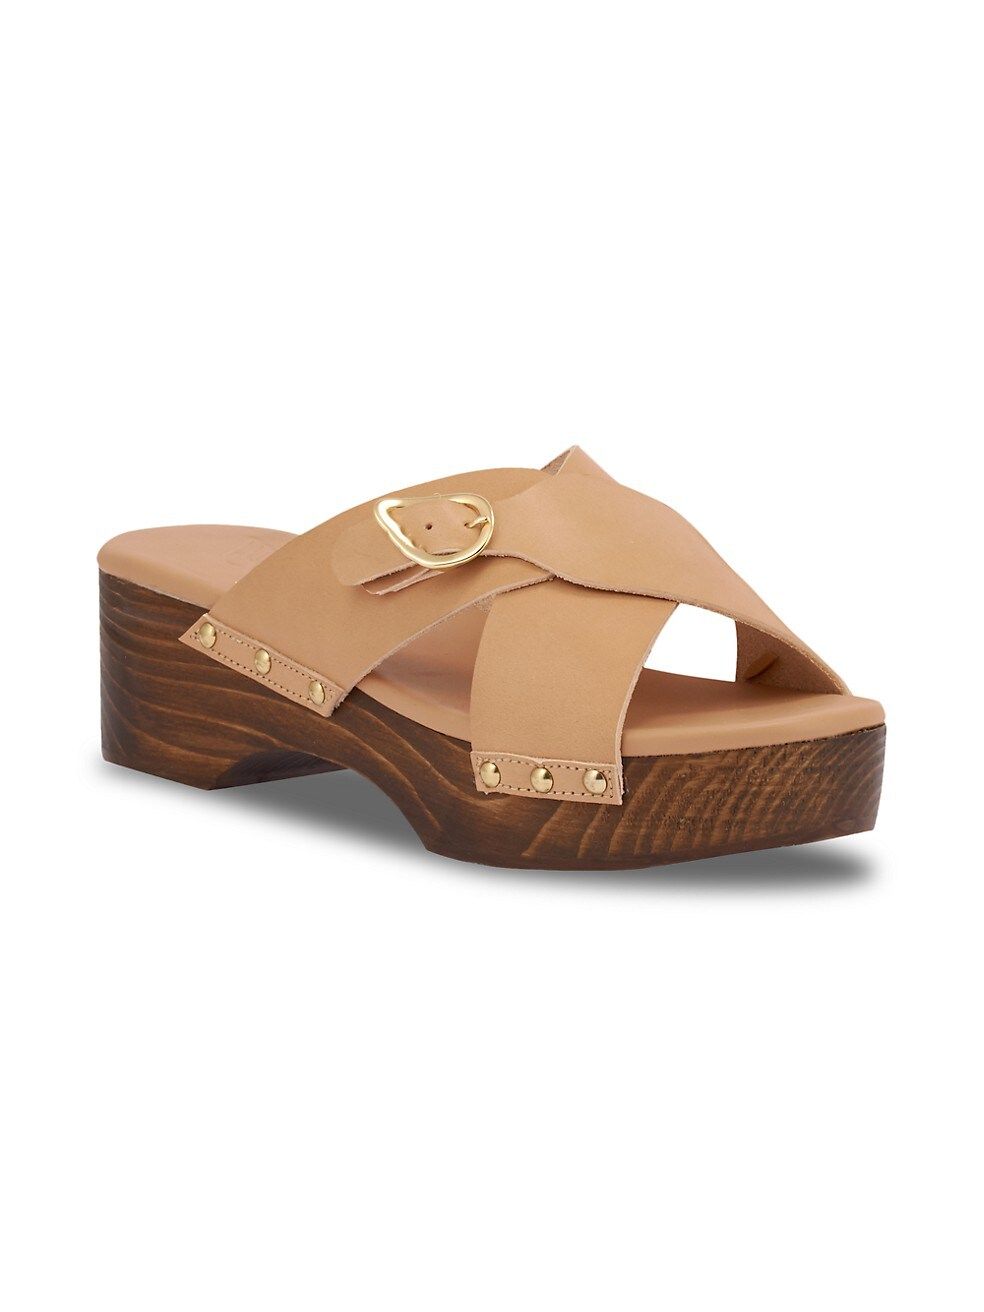 Marilisa Leather Clog Sandals | Saks Fifth Avenue